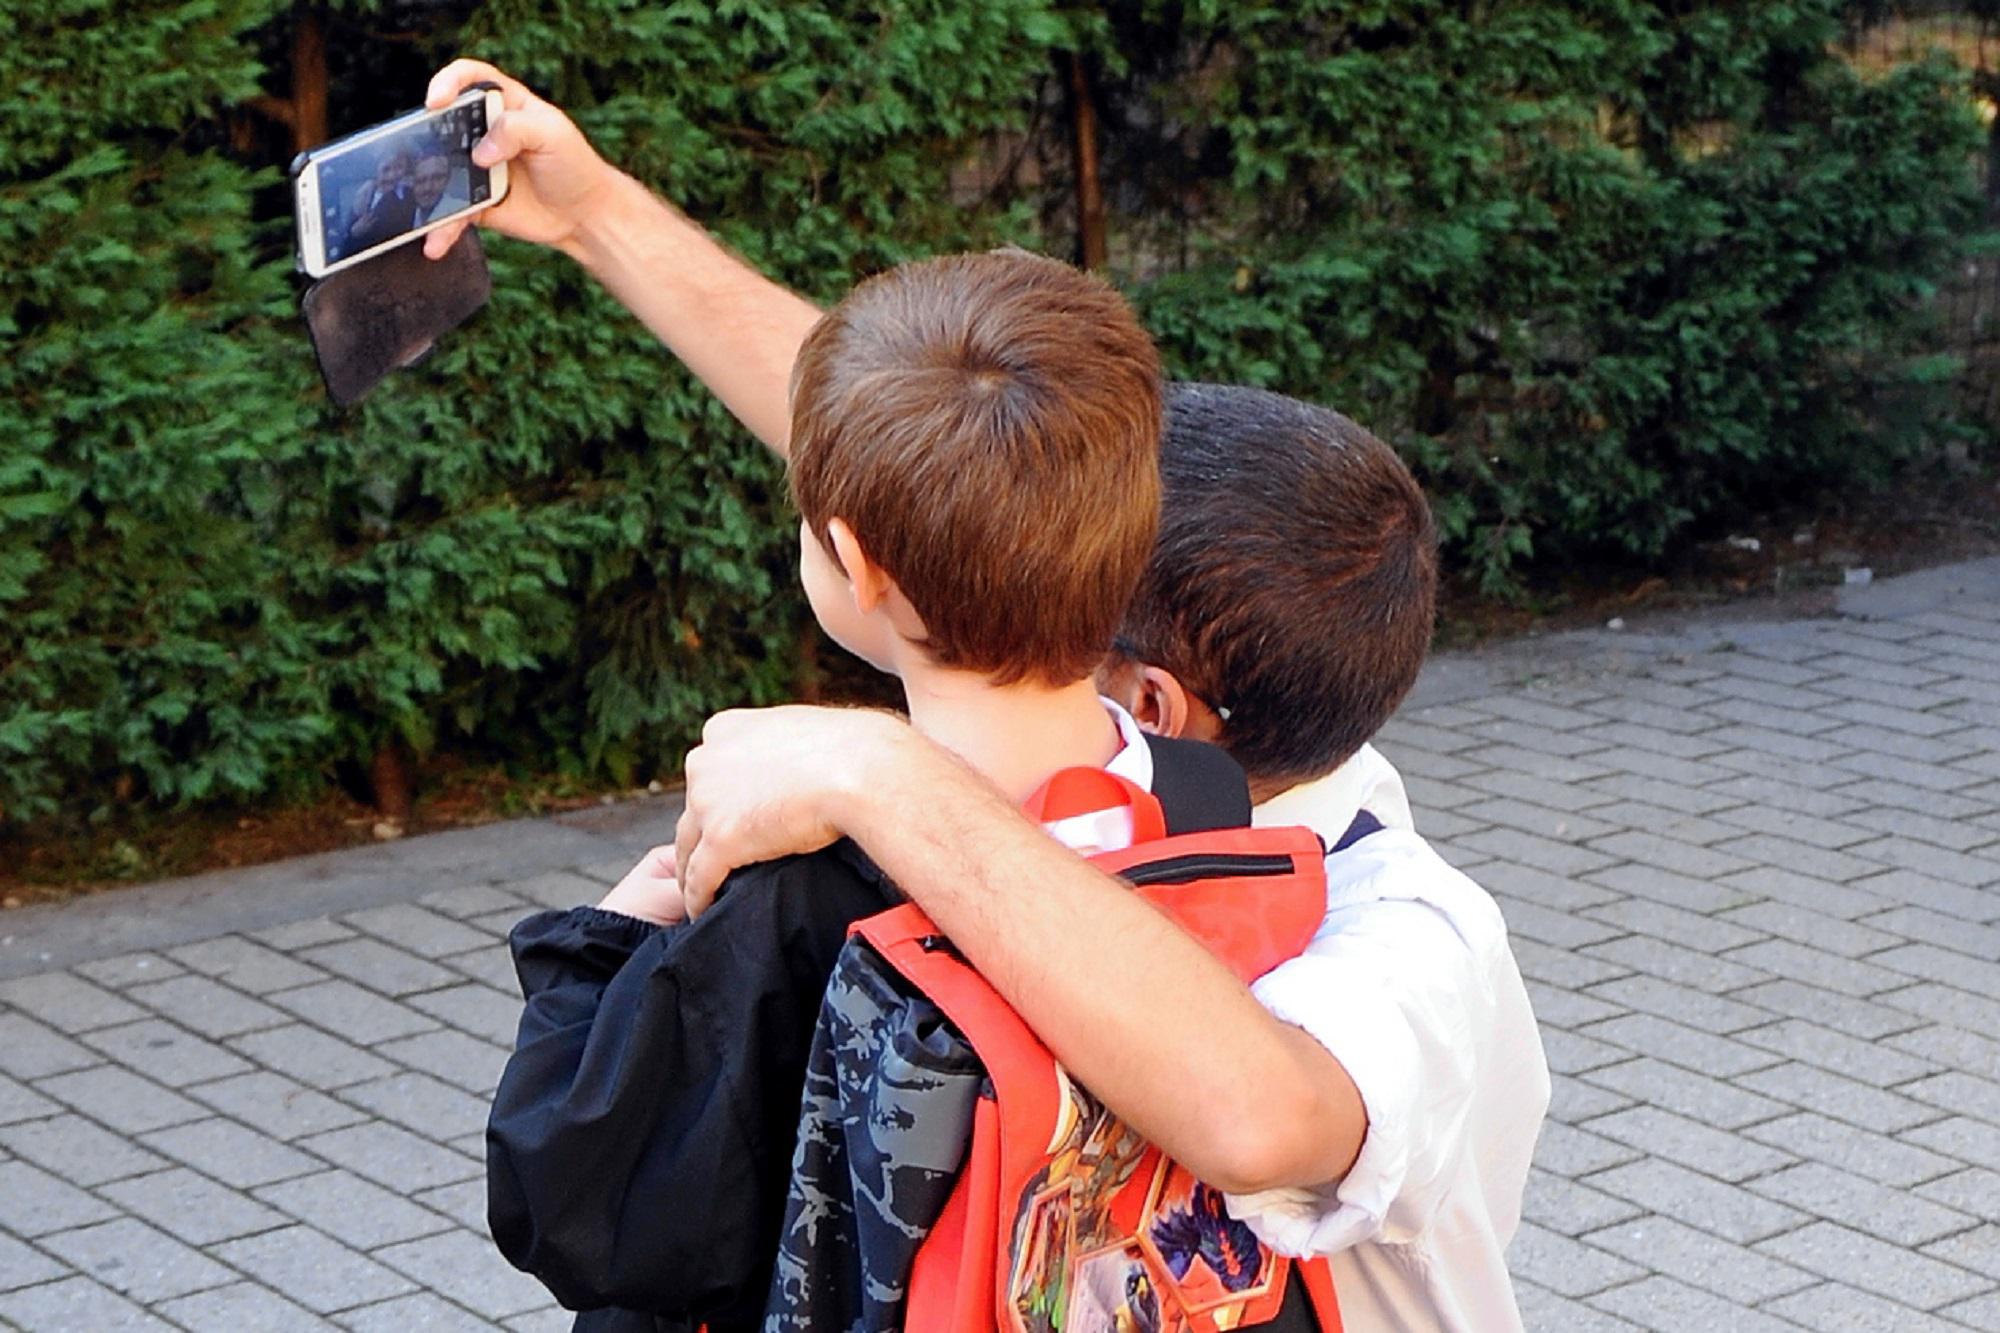 Scuola - Valditara: Da prossimo anno stop totale ai cellulari - torna il diario per i compiti